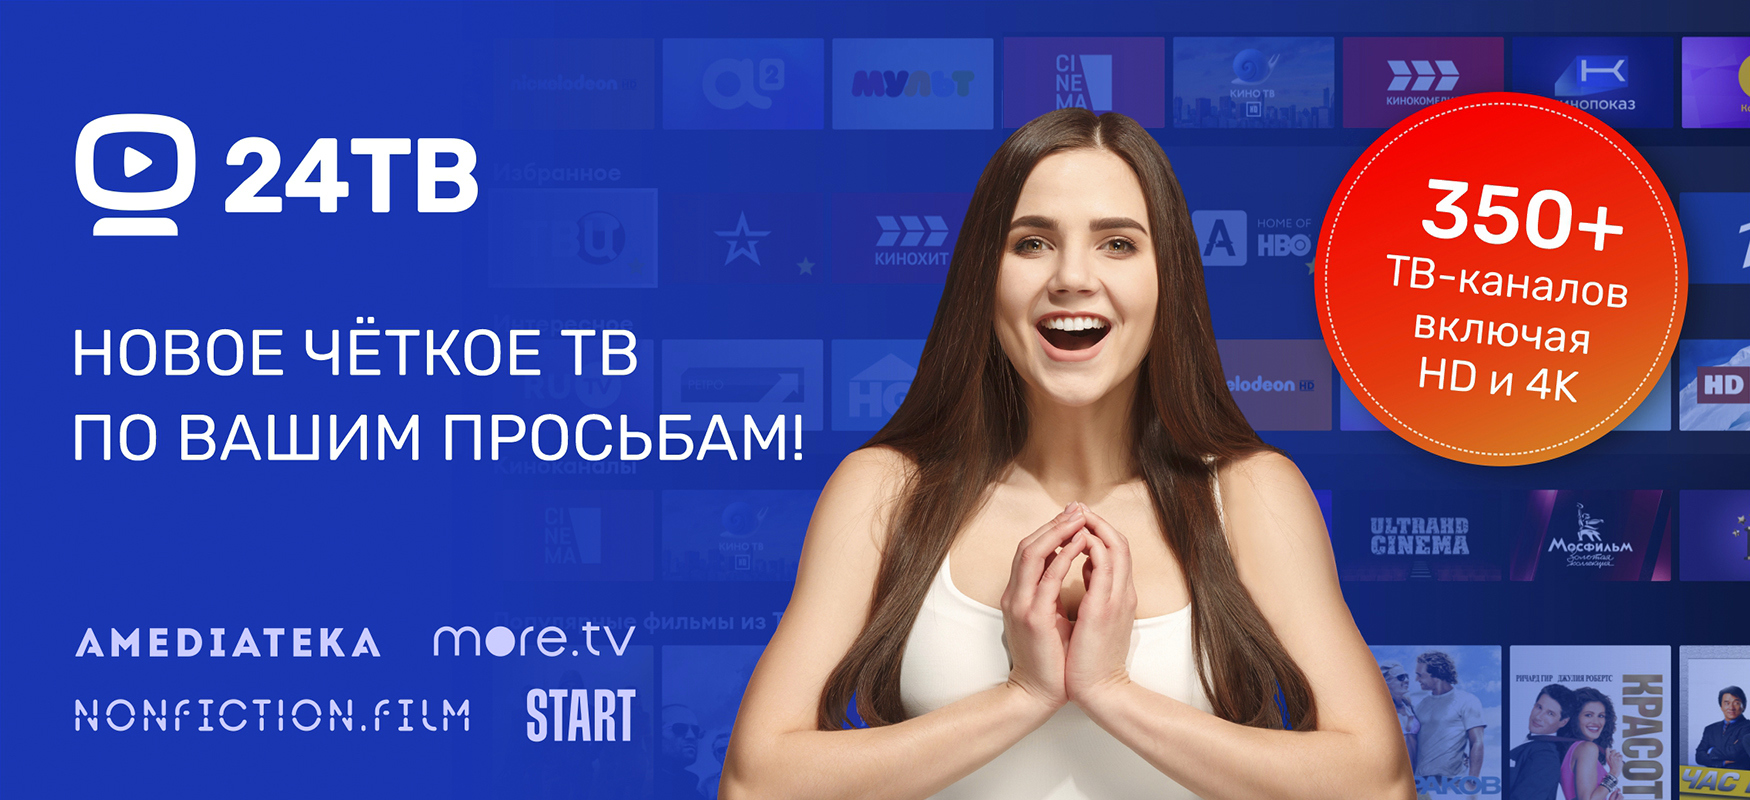 24ТВ - Новое четкое ТВ по вашим просьбам